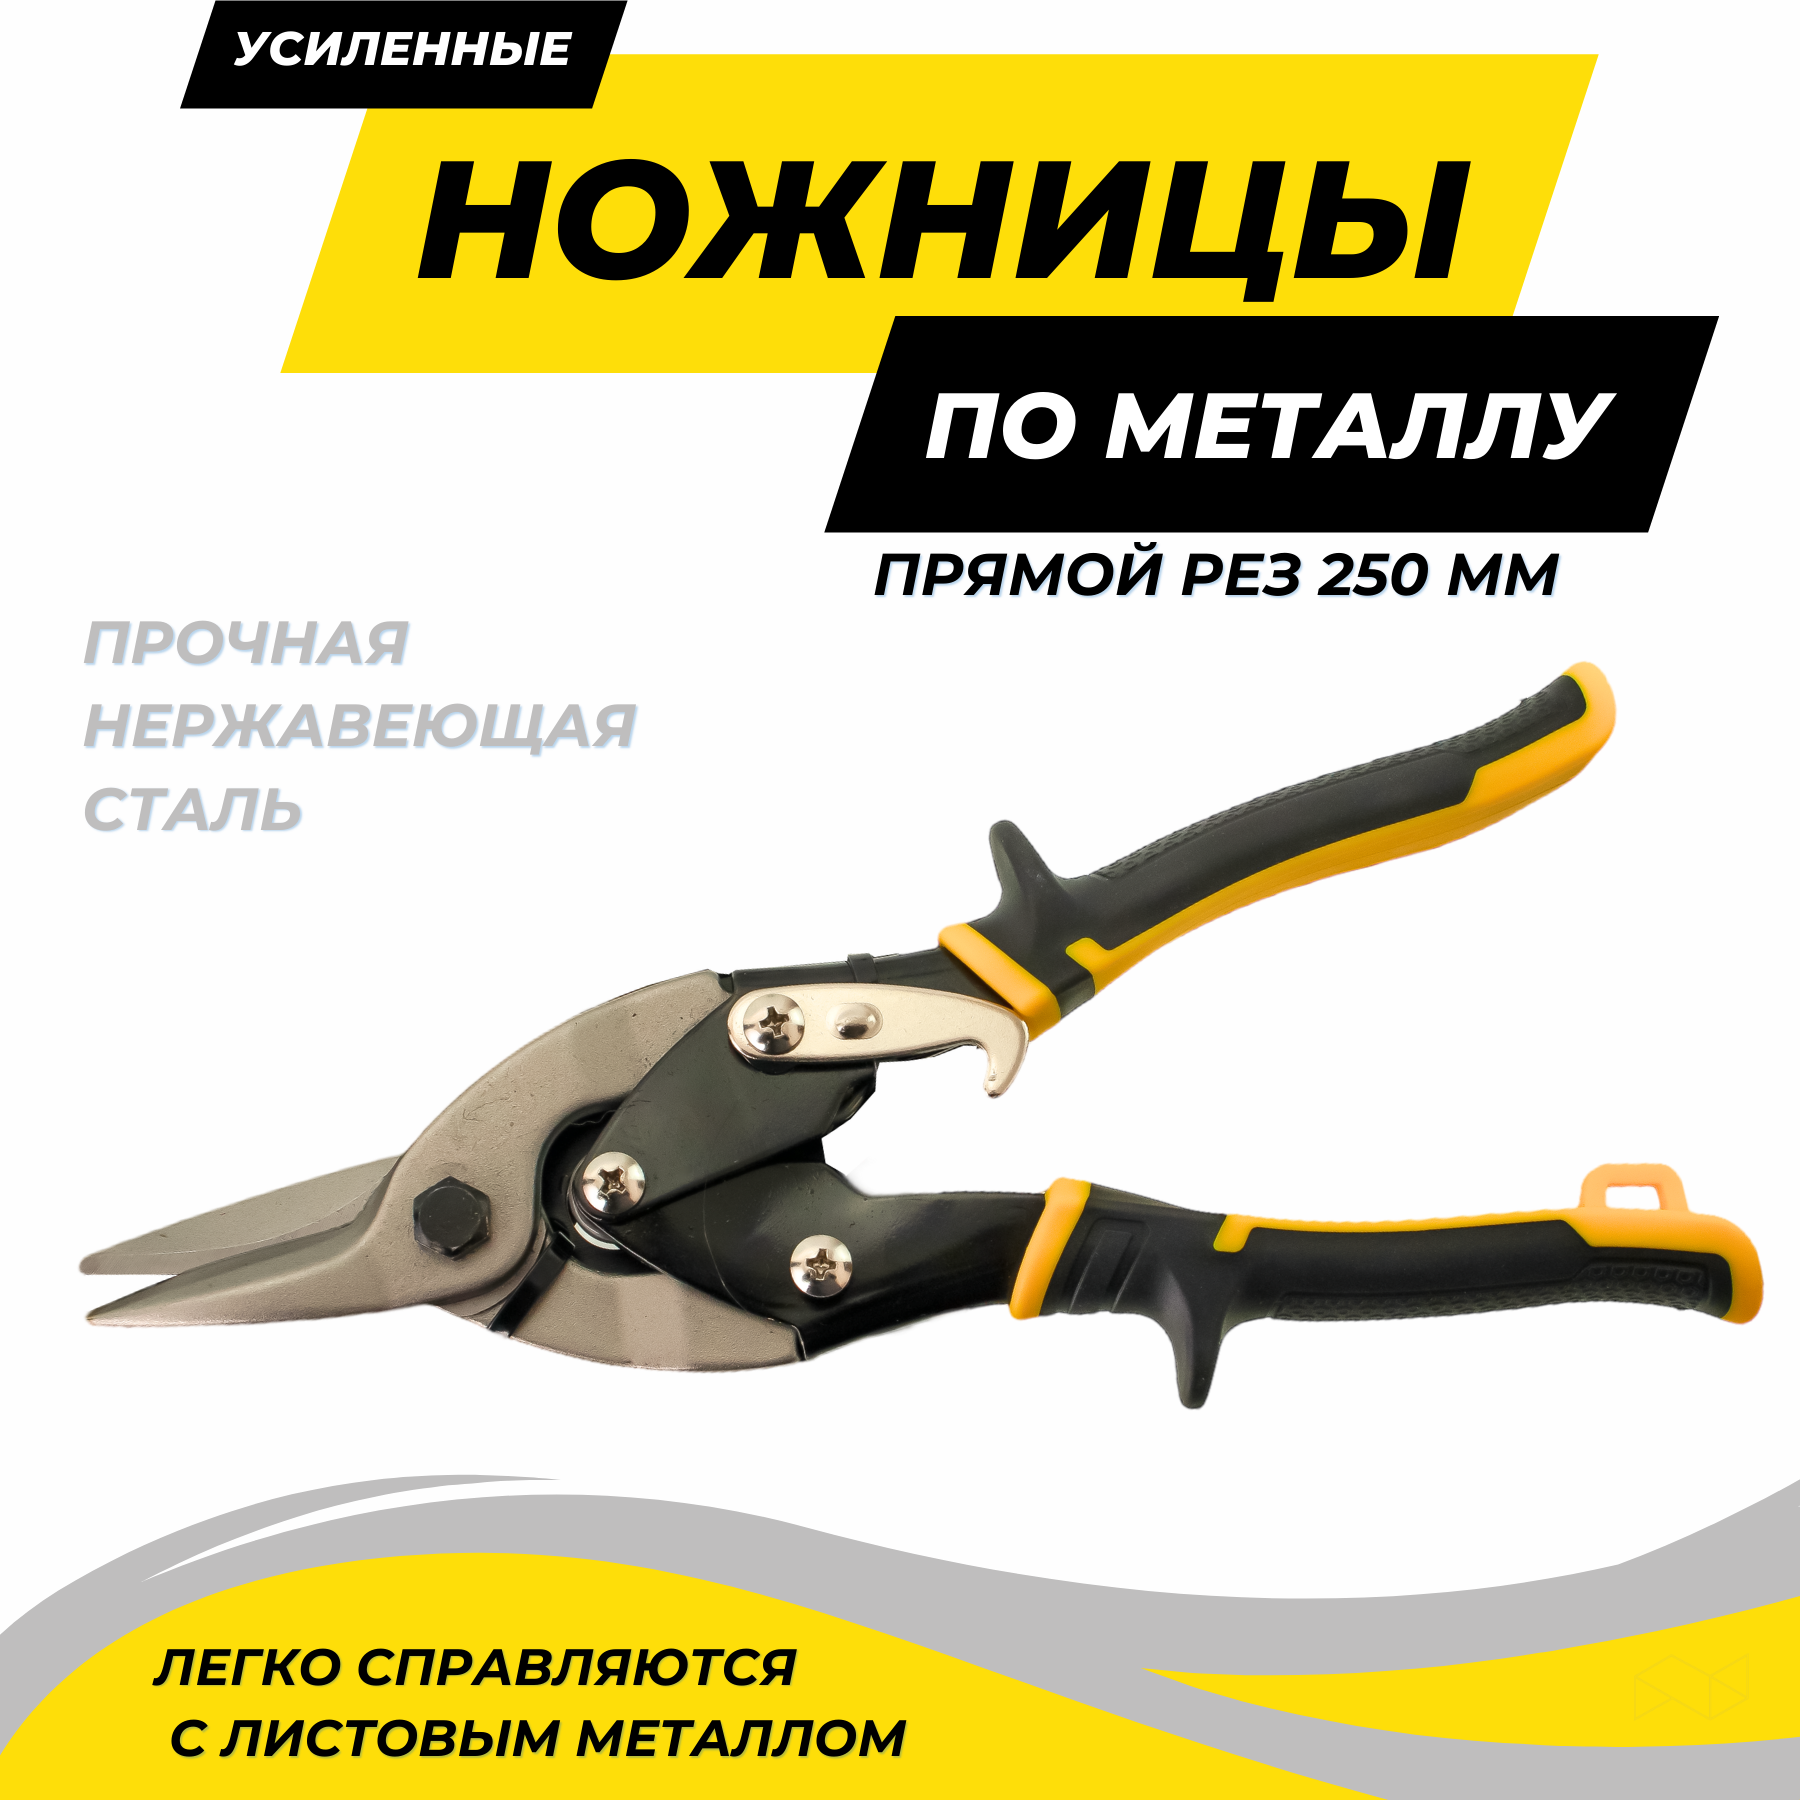 Ножницы по металлу усиленные прямой рез 250 мм ножницы пеликаны усиленные freund l300 левые 01233300